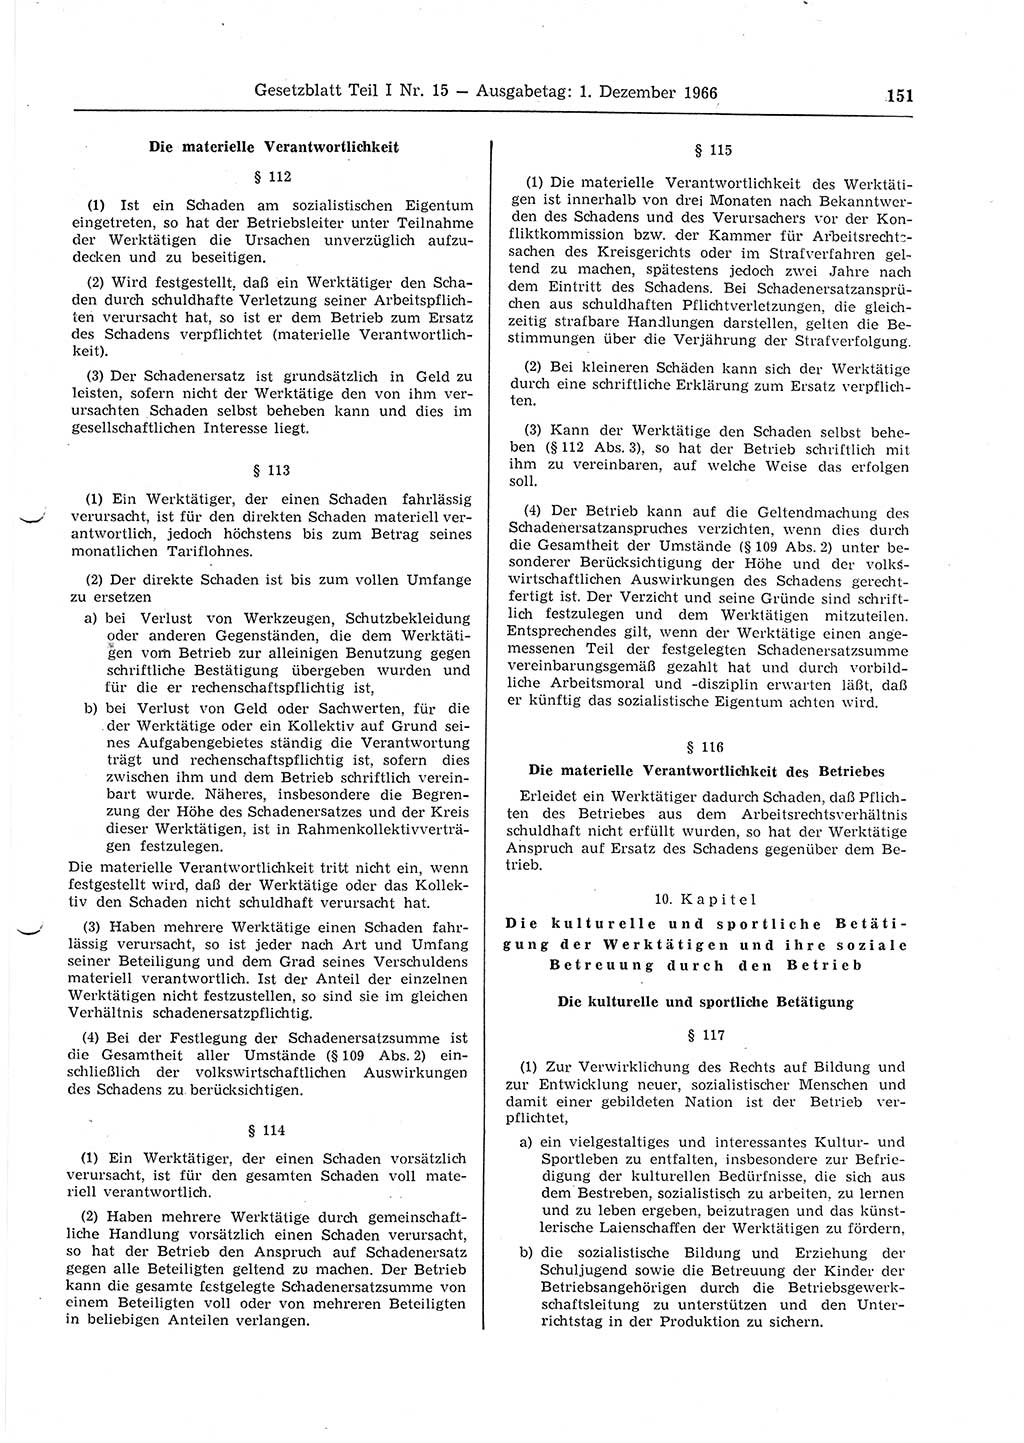 Gesetzblatt (GBl.) der Deutschen Demokratischen Republik (DDR) Teil Ⅰ 1966, Seite 151 (GBl. DDR Ⅰ 1966, S. 151)